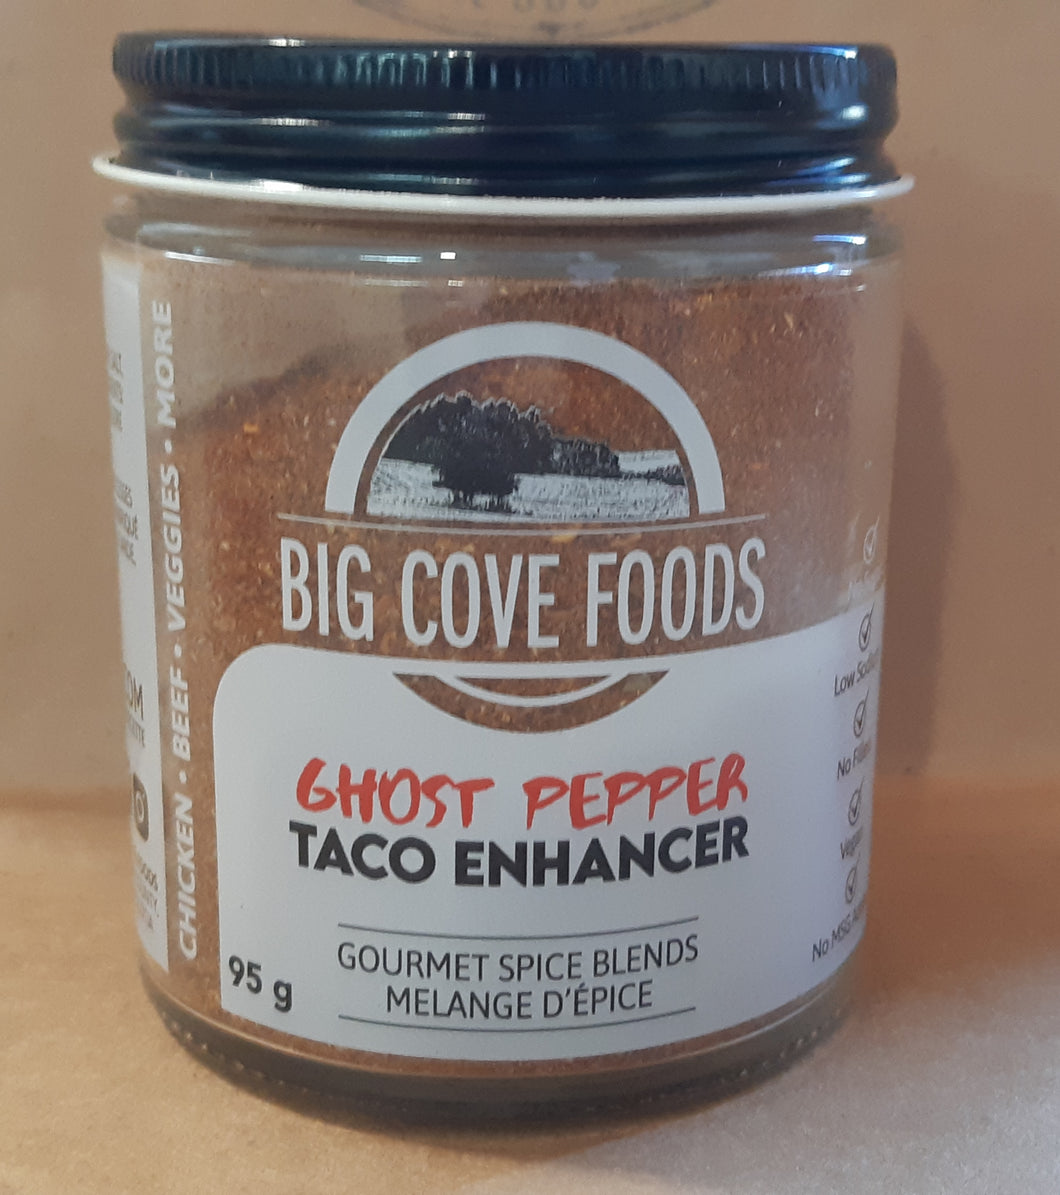 Ghost pepper taco enhancer - big cove foods 95g